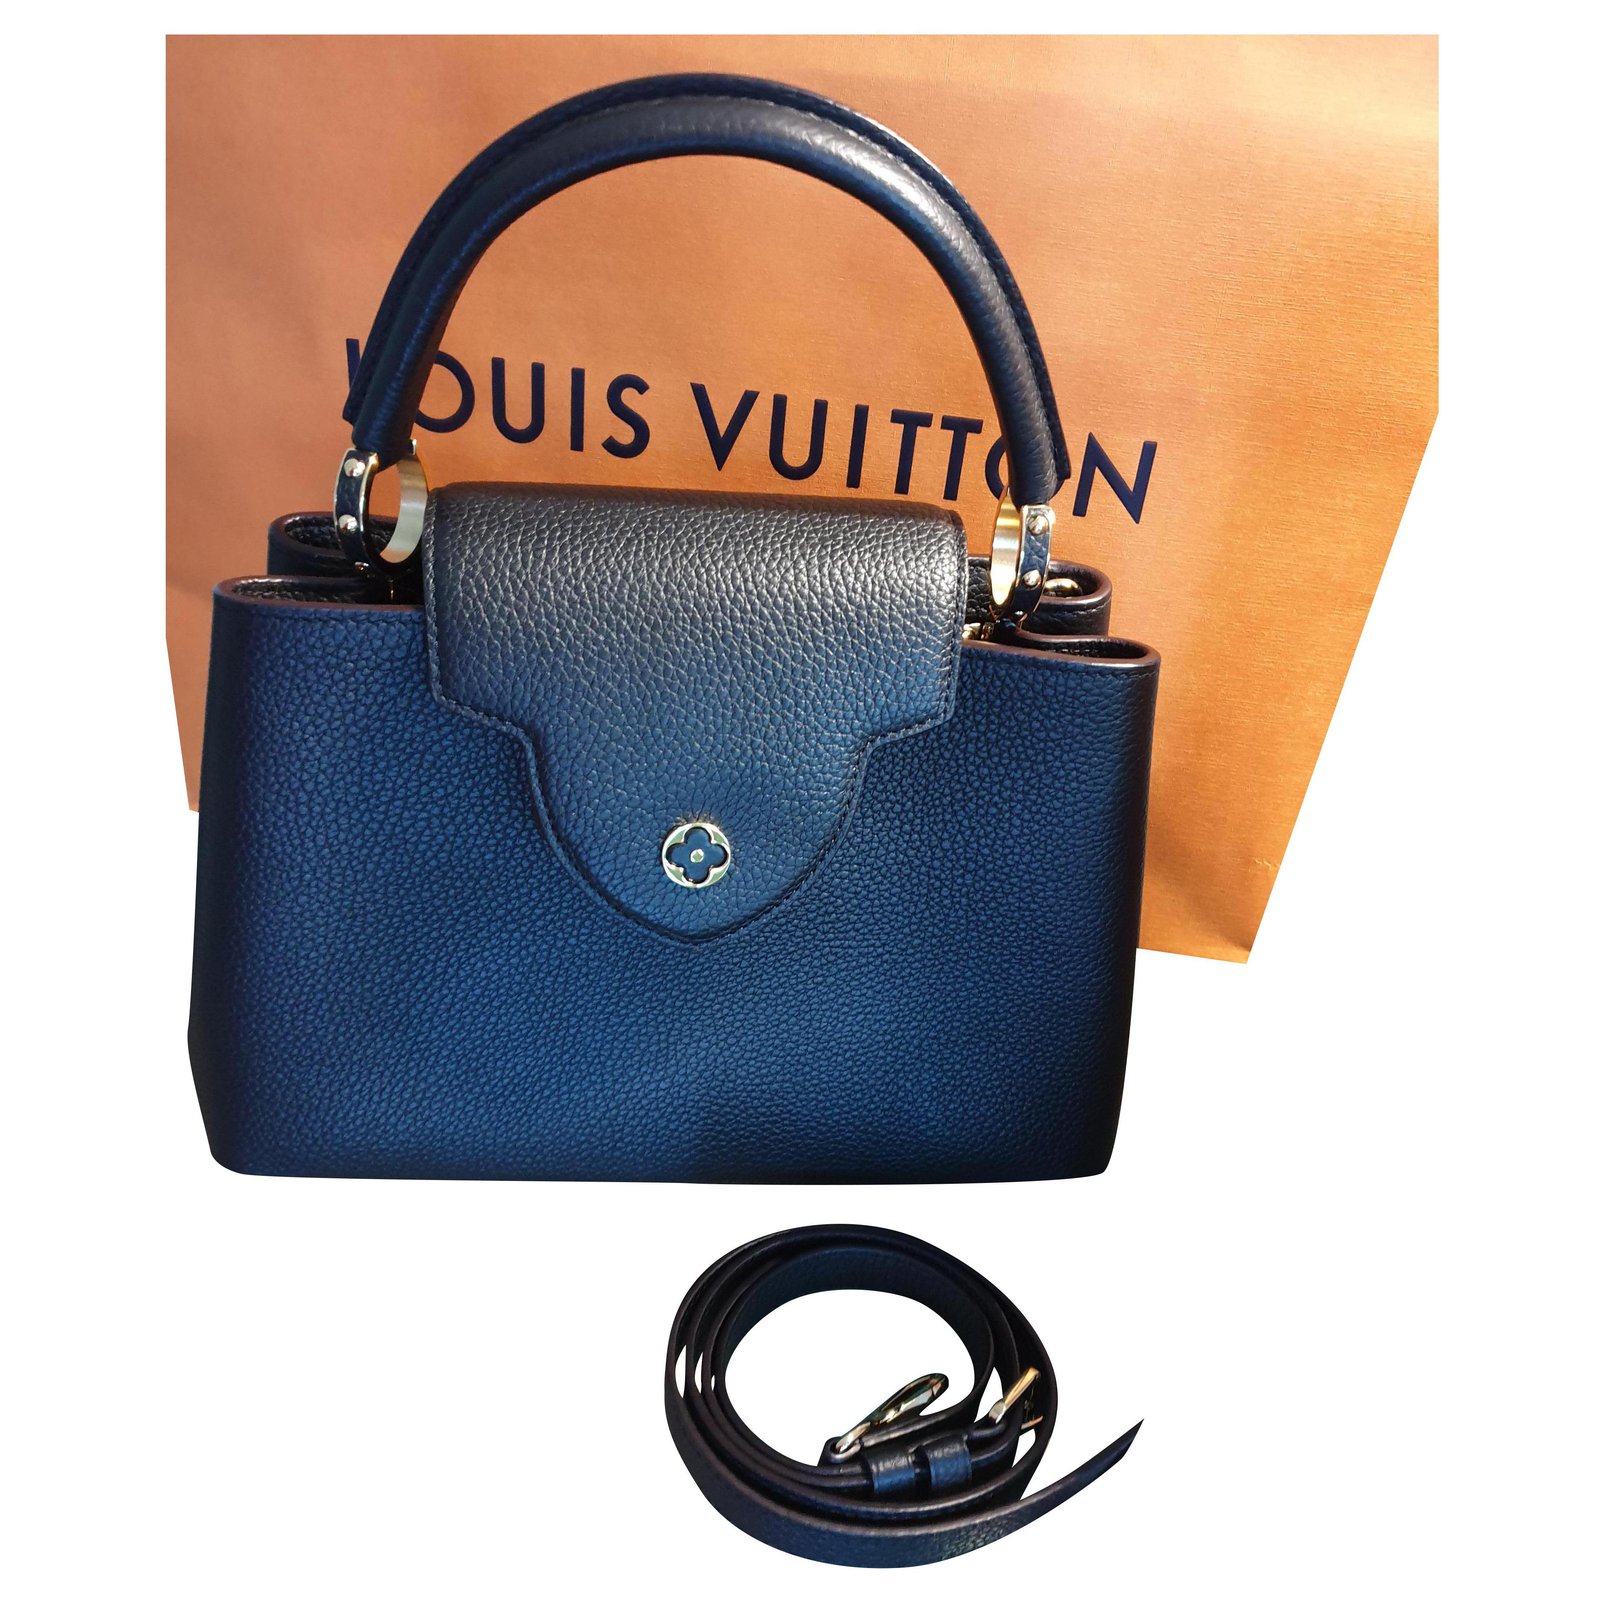 Louis Vuitton handbag Capucines PM, FULLSET! Black Leather ref